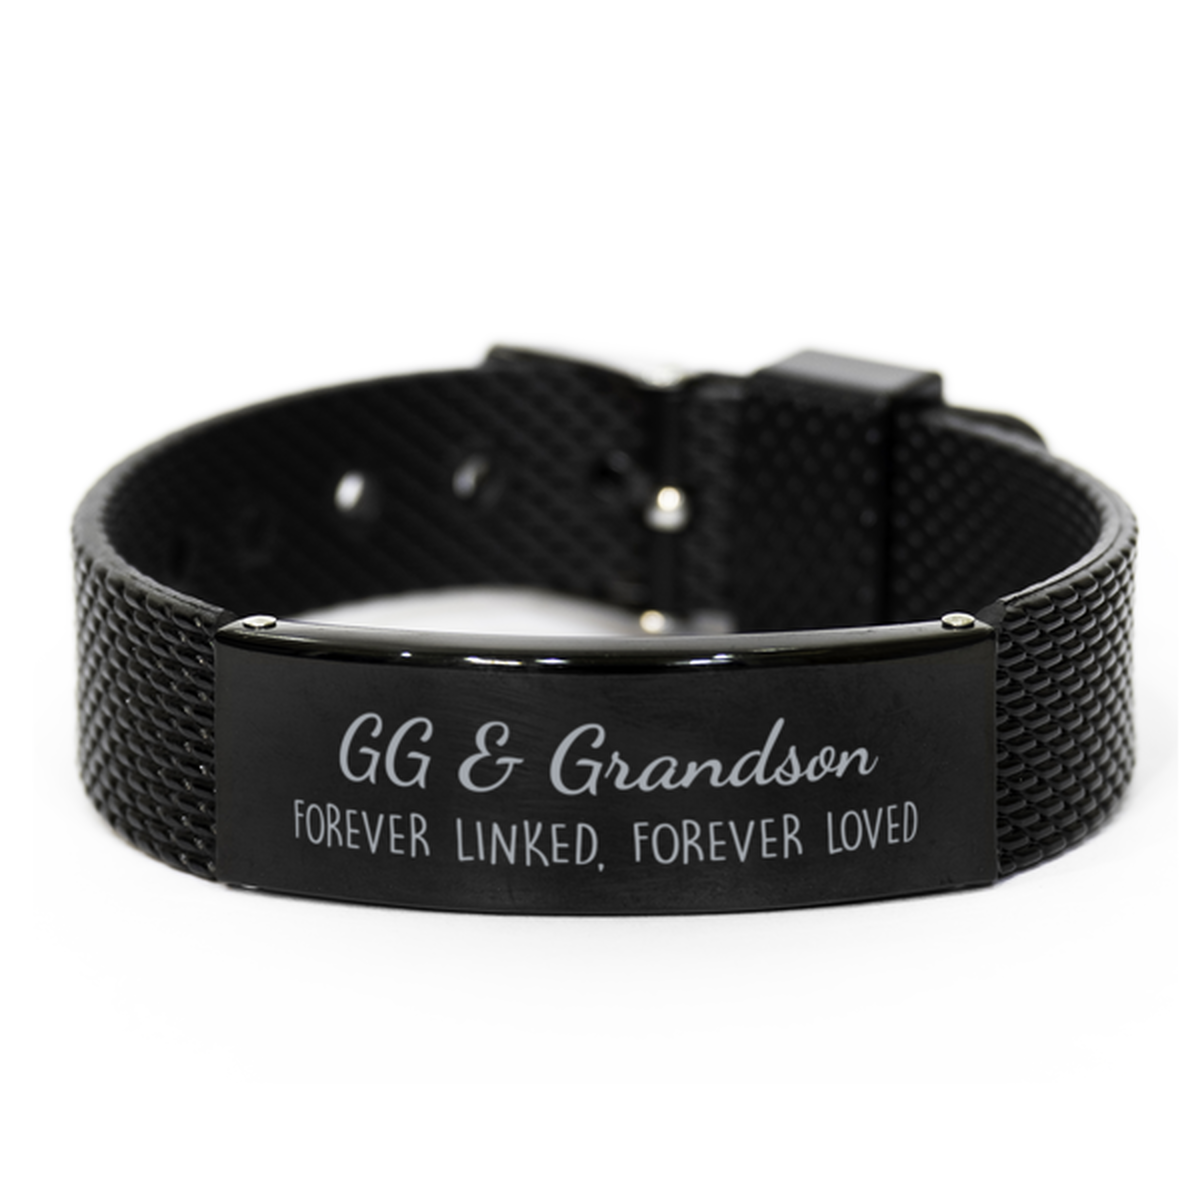 GG and Grandson Forever Linked Forever Loved Bracelet, GG Grandson Bracelet, Black Stainless Steel Leather Bracelet, Birthday, Christmas.